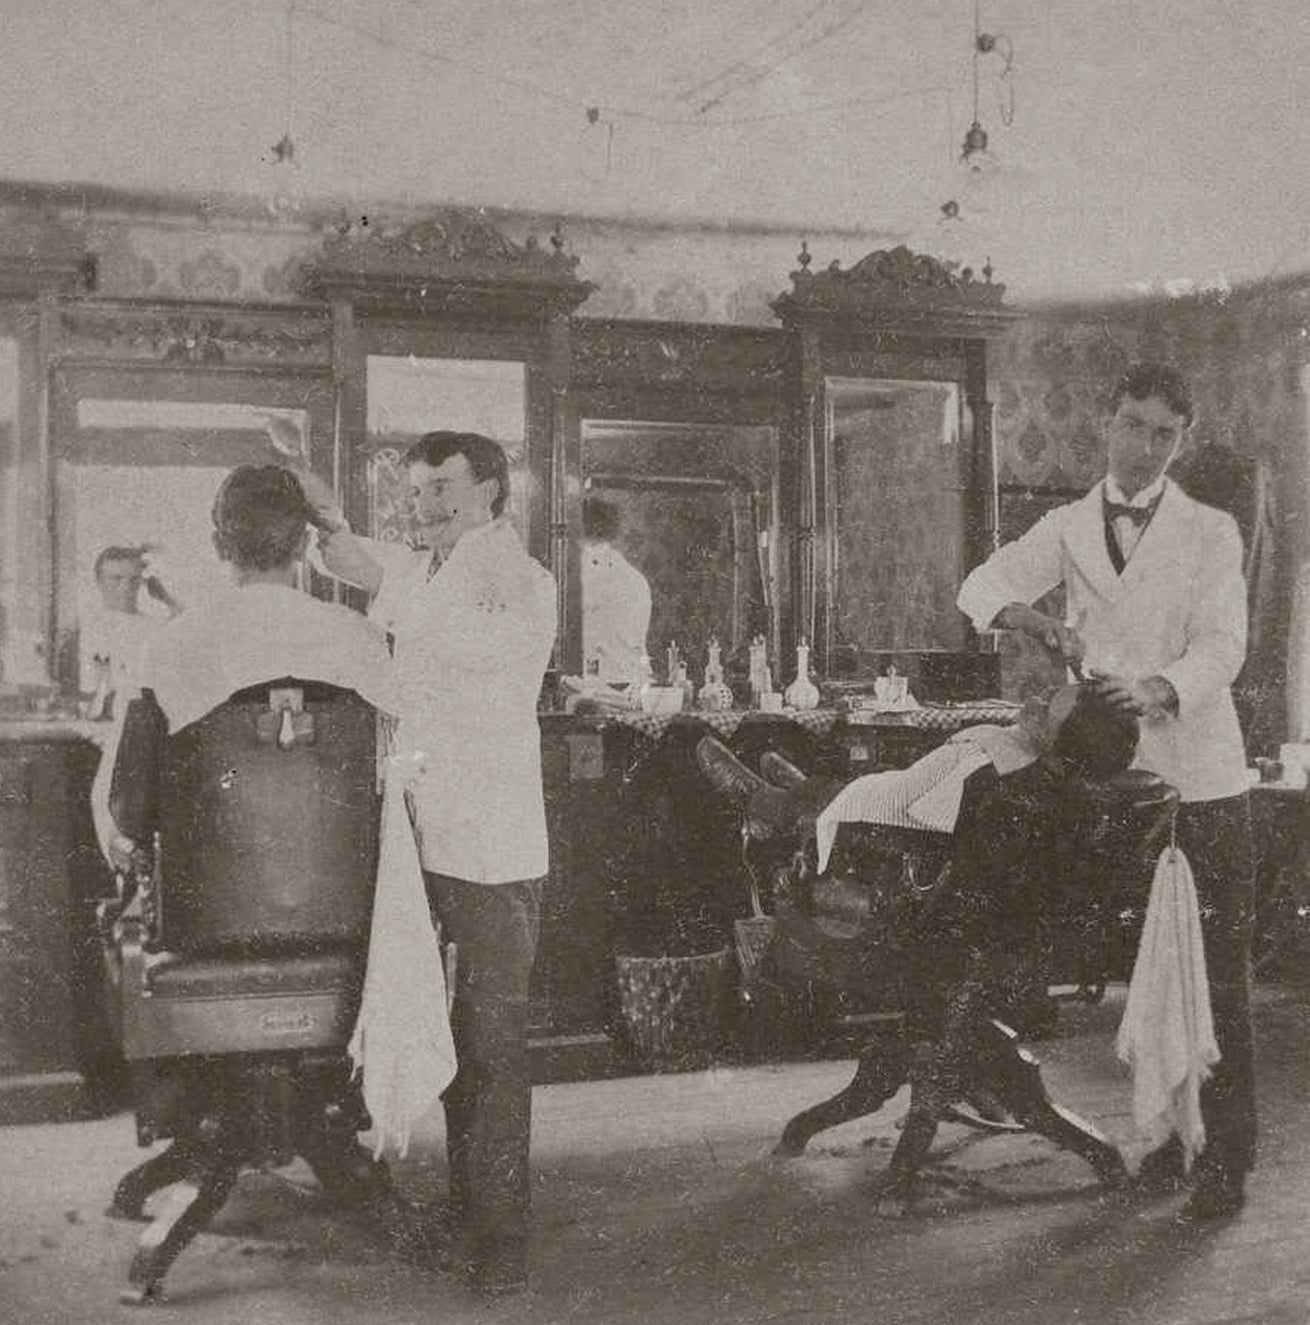 Barber Shop Interior